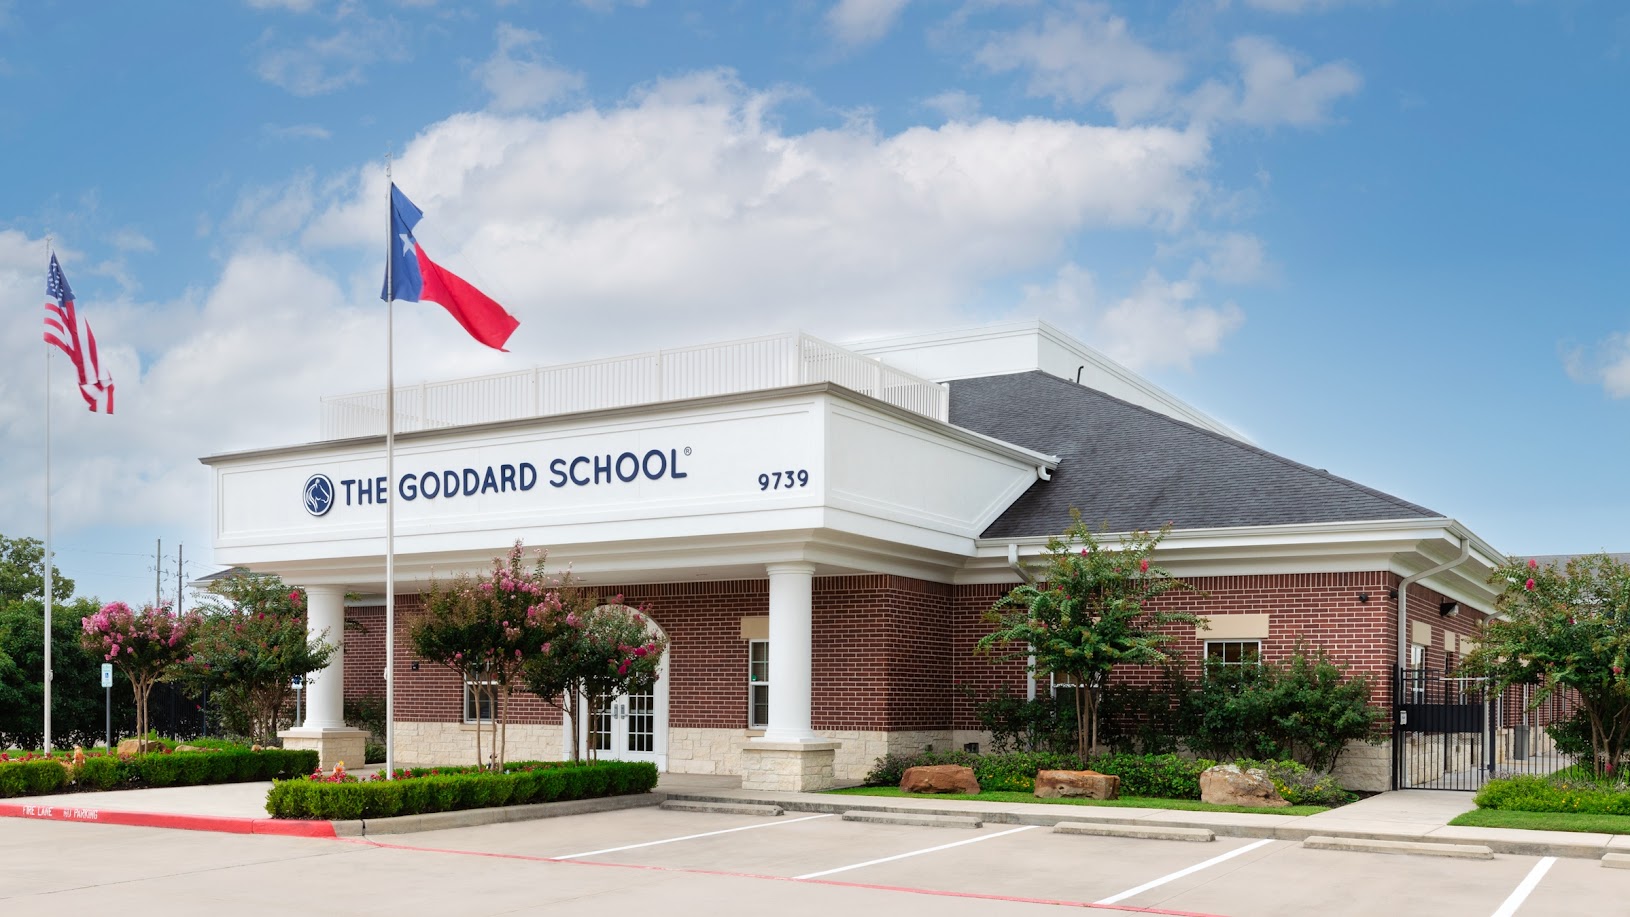 The Goddard School of Cypress